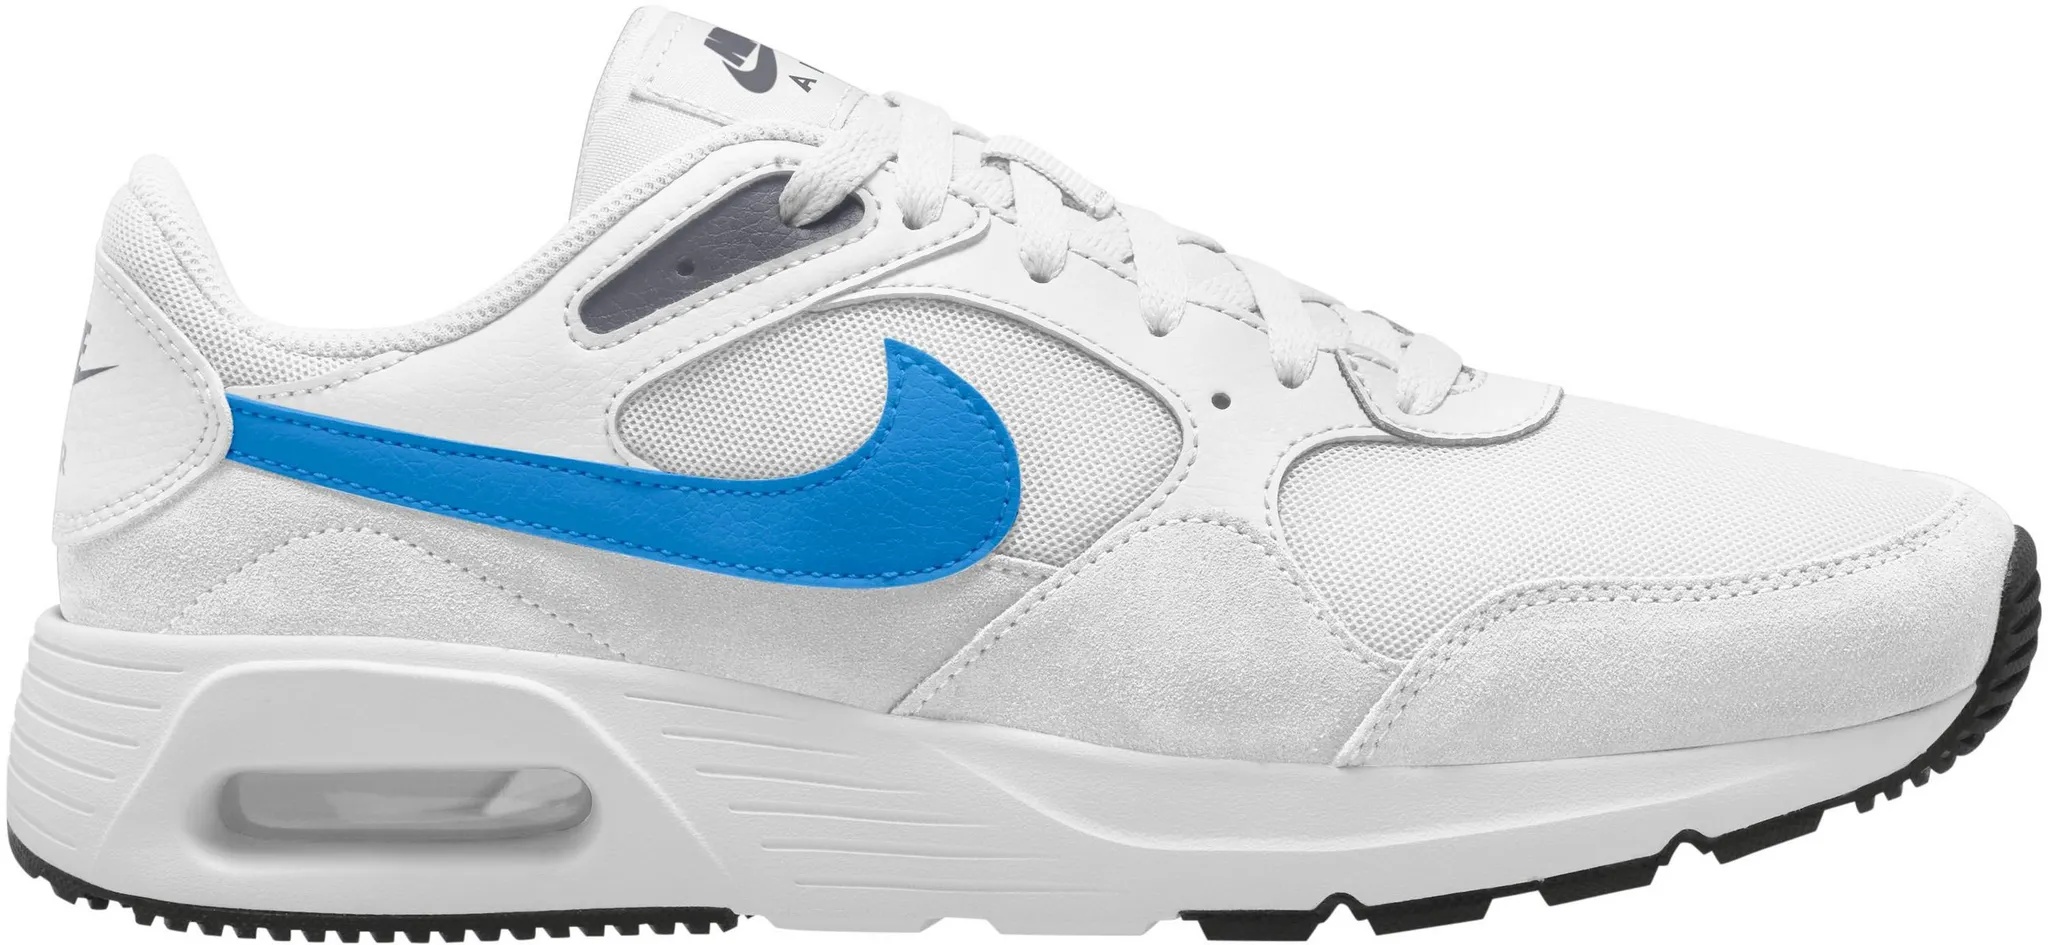 Nike Air Max SC Sneaker Herren in white-light photo blue-thunder blue-white, Größe 46